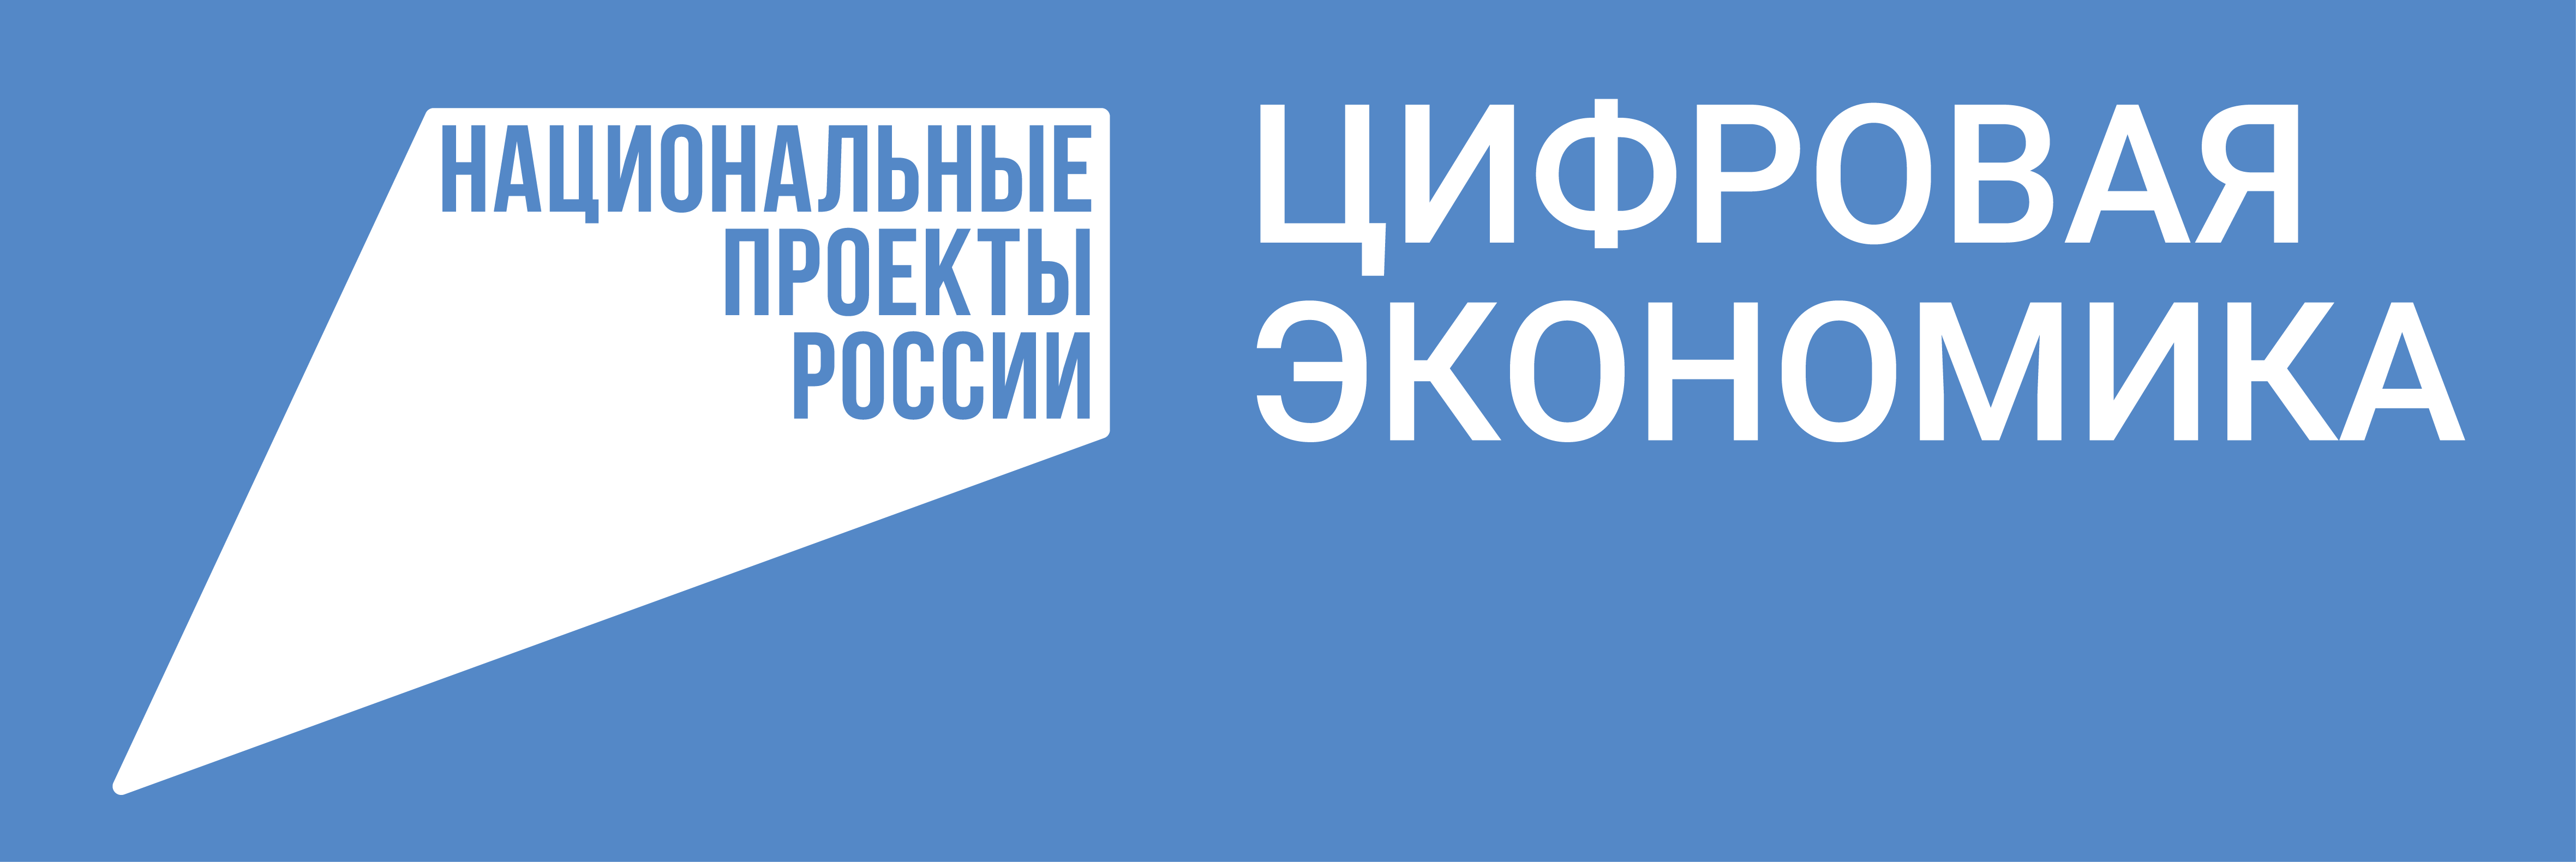 С 30 октября по 5 ноября в Ульяновской области проходила тематическая неделя нацпроекта «Цифровая экономика».